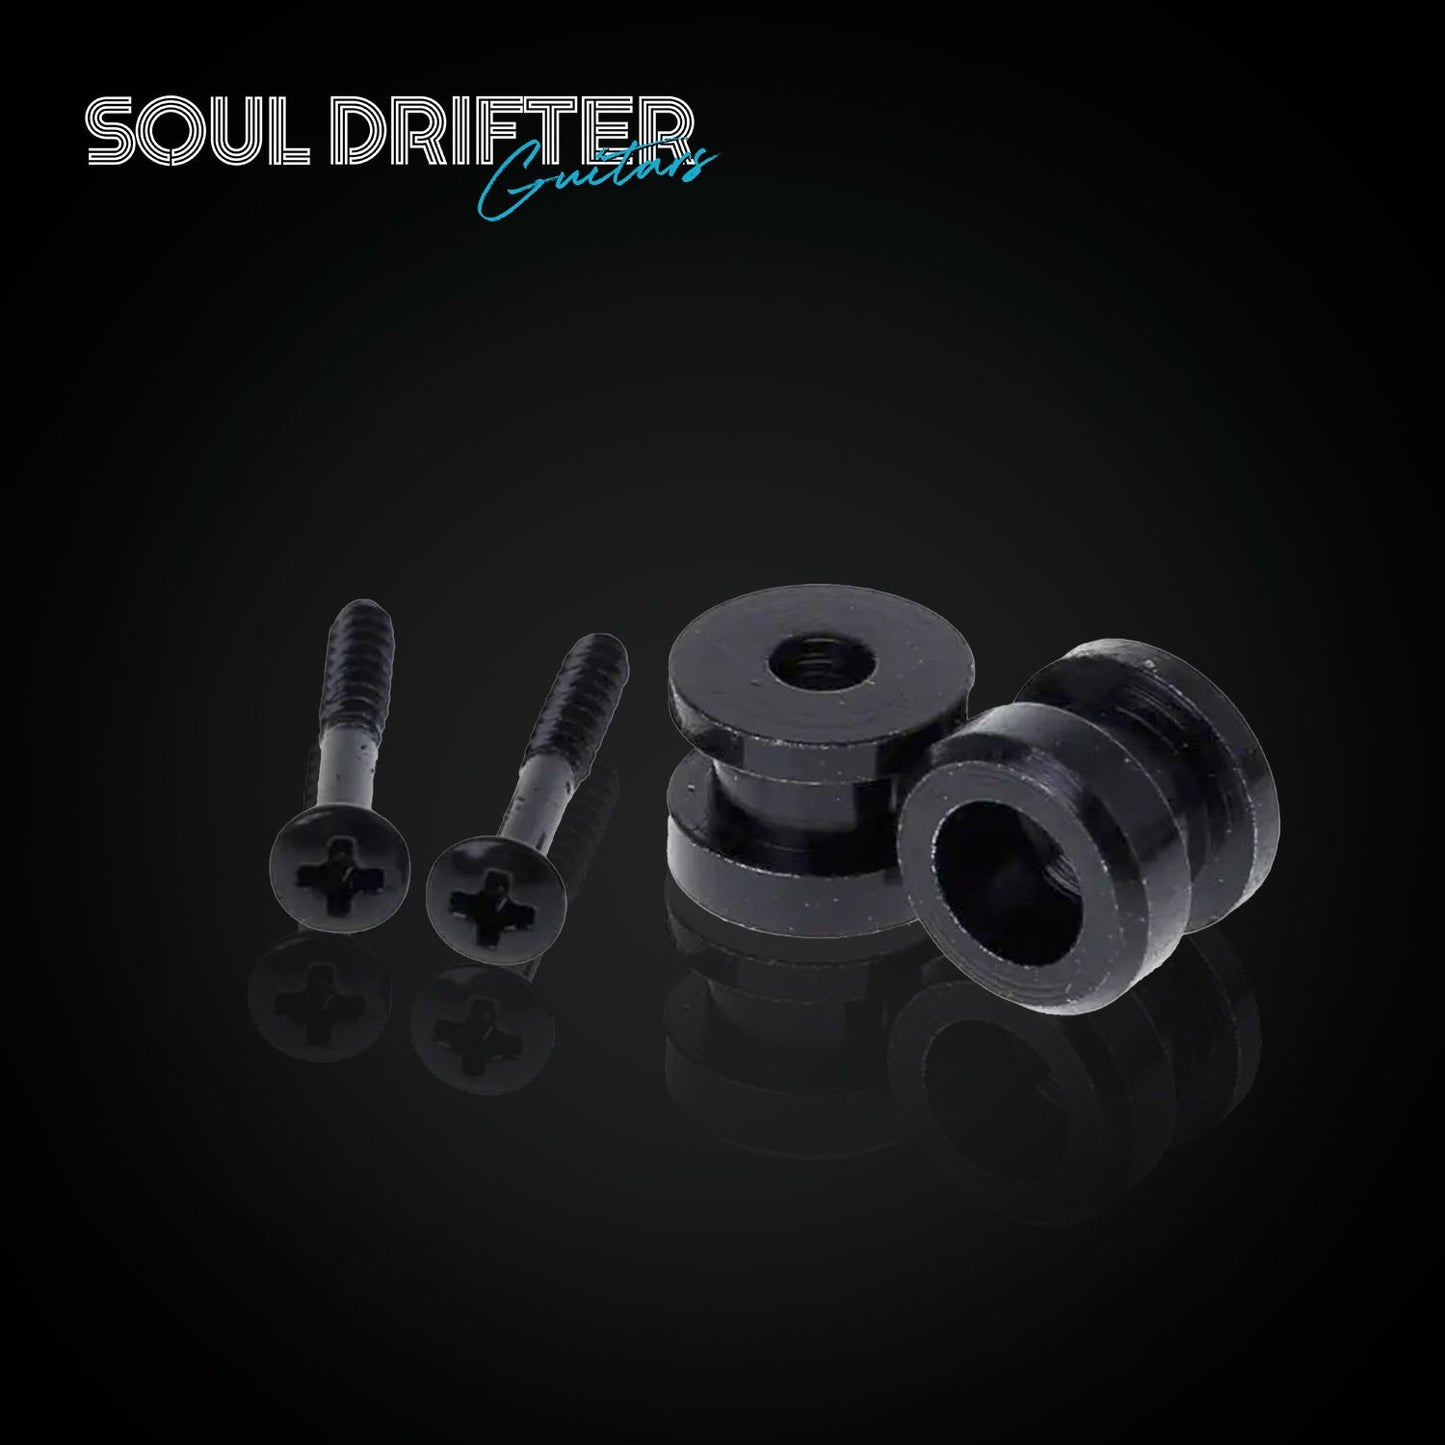 Schaller Style Strap Lock Buttons - Black